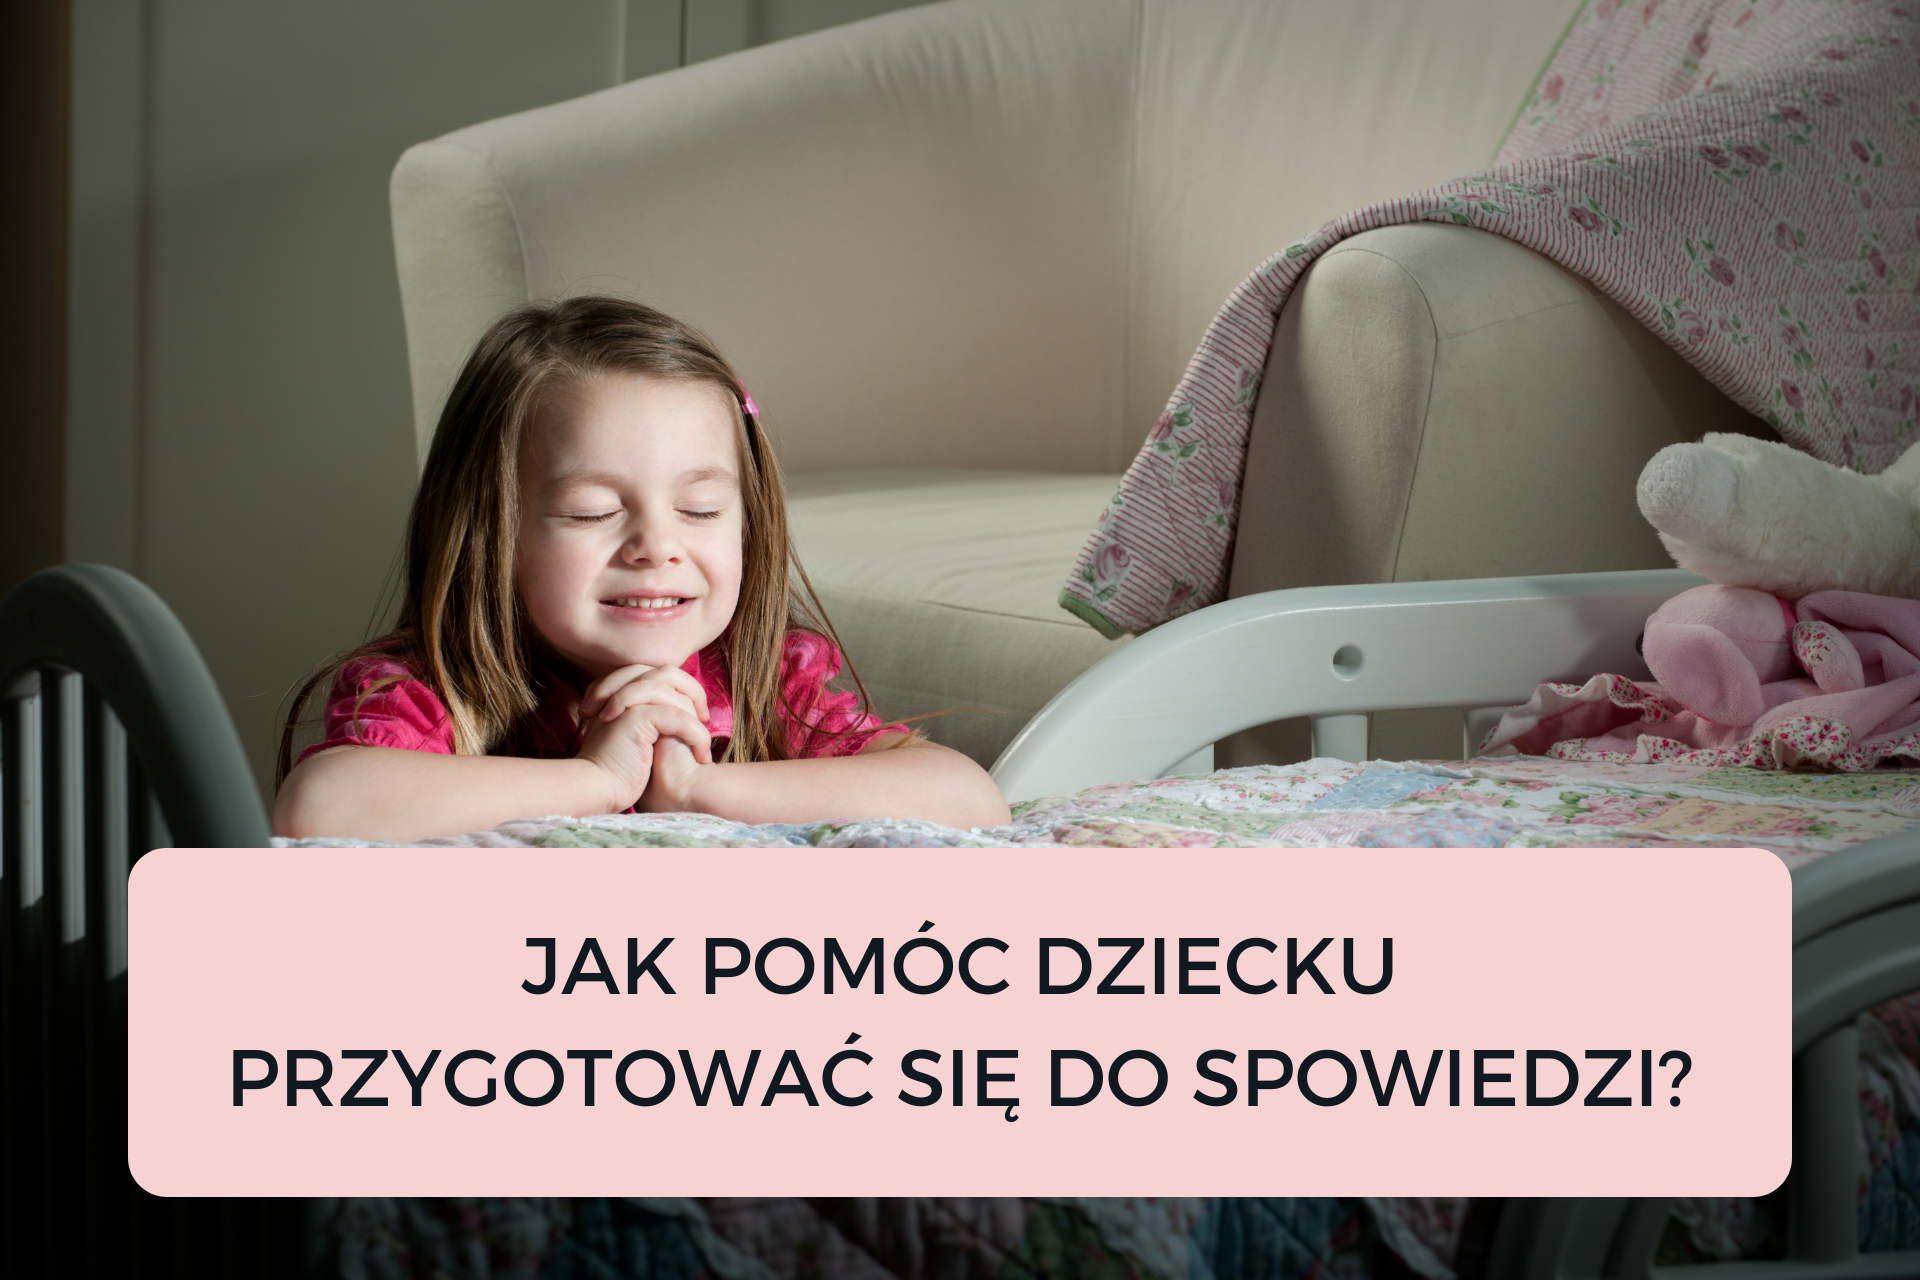 You are currently viewing JAK POMÓC DZIECKU PRZYGOTOWAĆ SIĘ DO SPOWIEDZI?